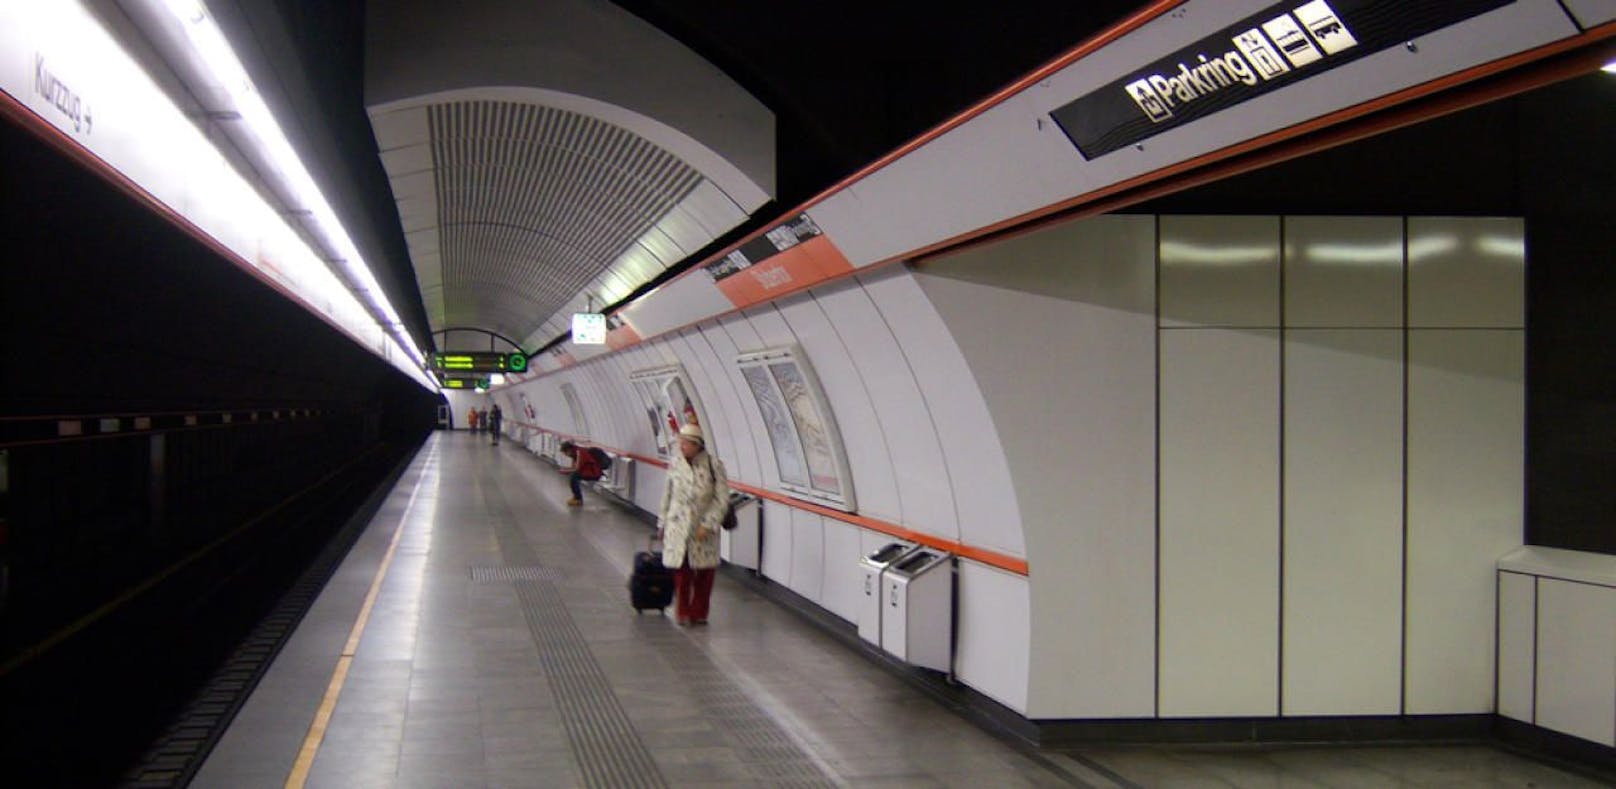 Die Attacke ereignete sich in der U-Bahn-Station Stubentor